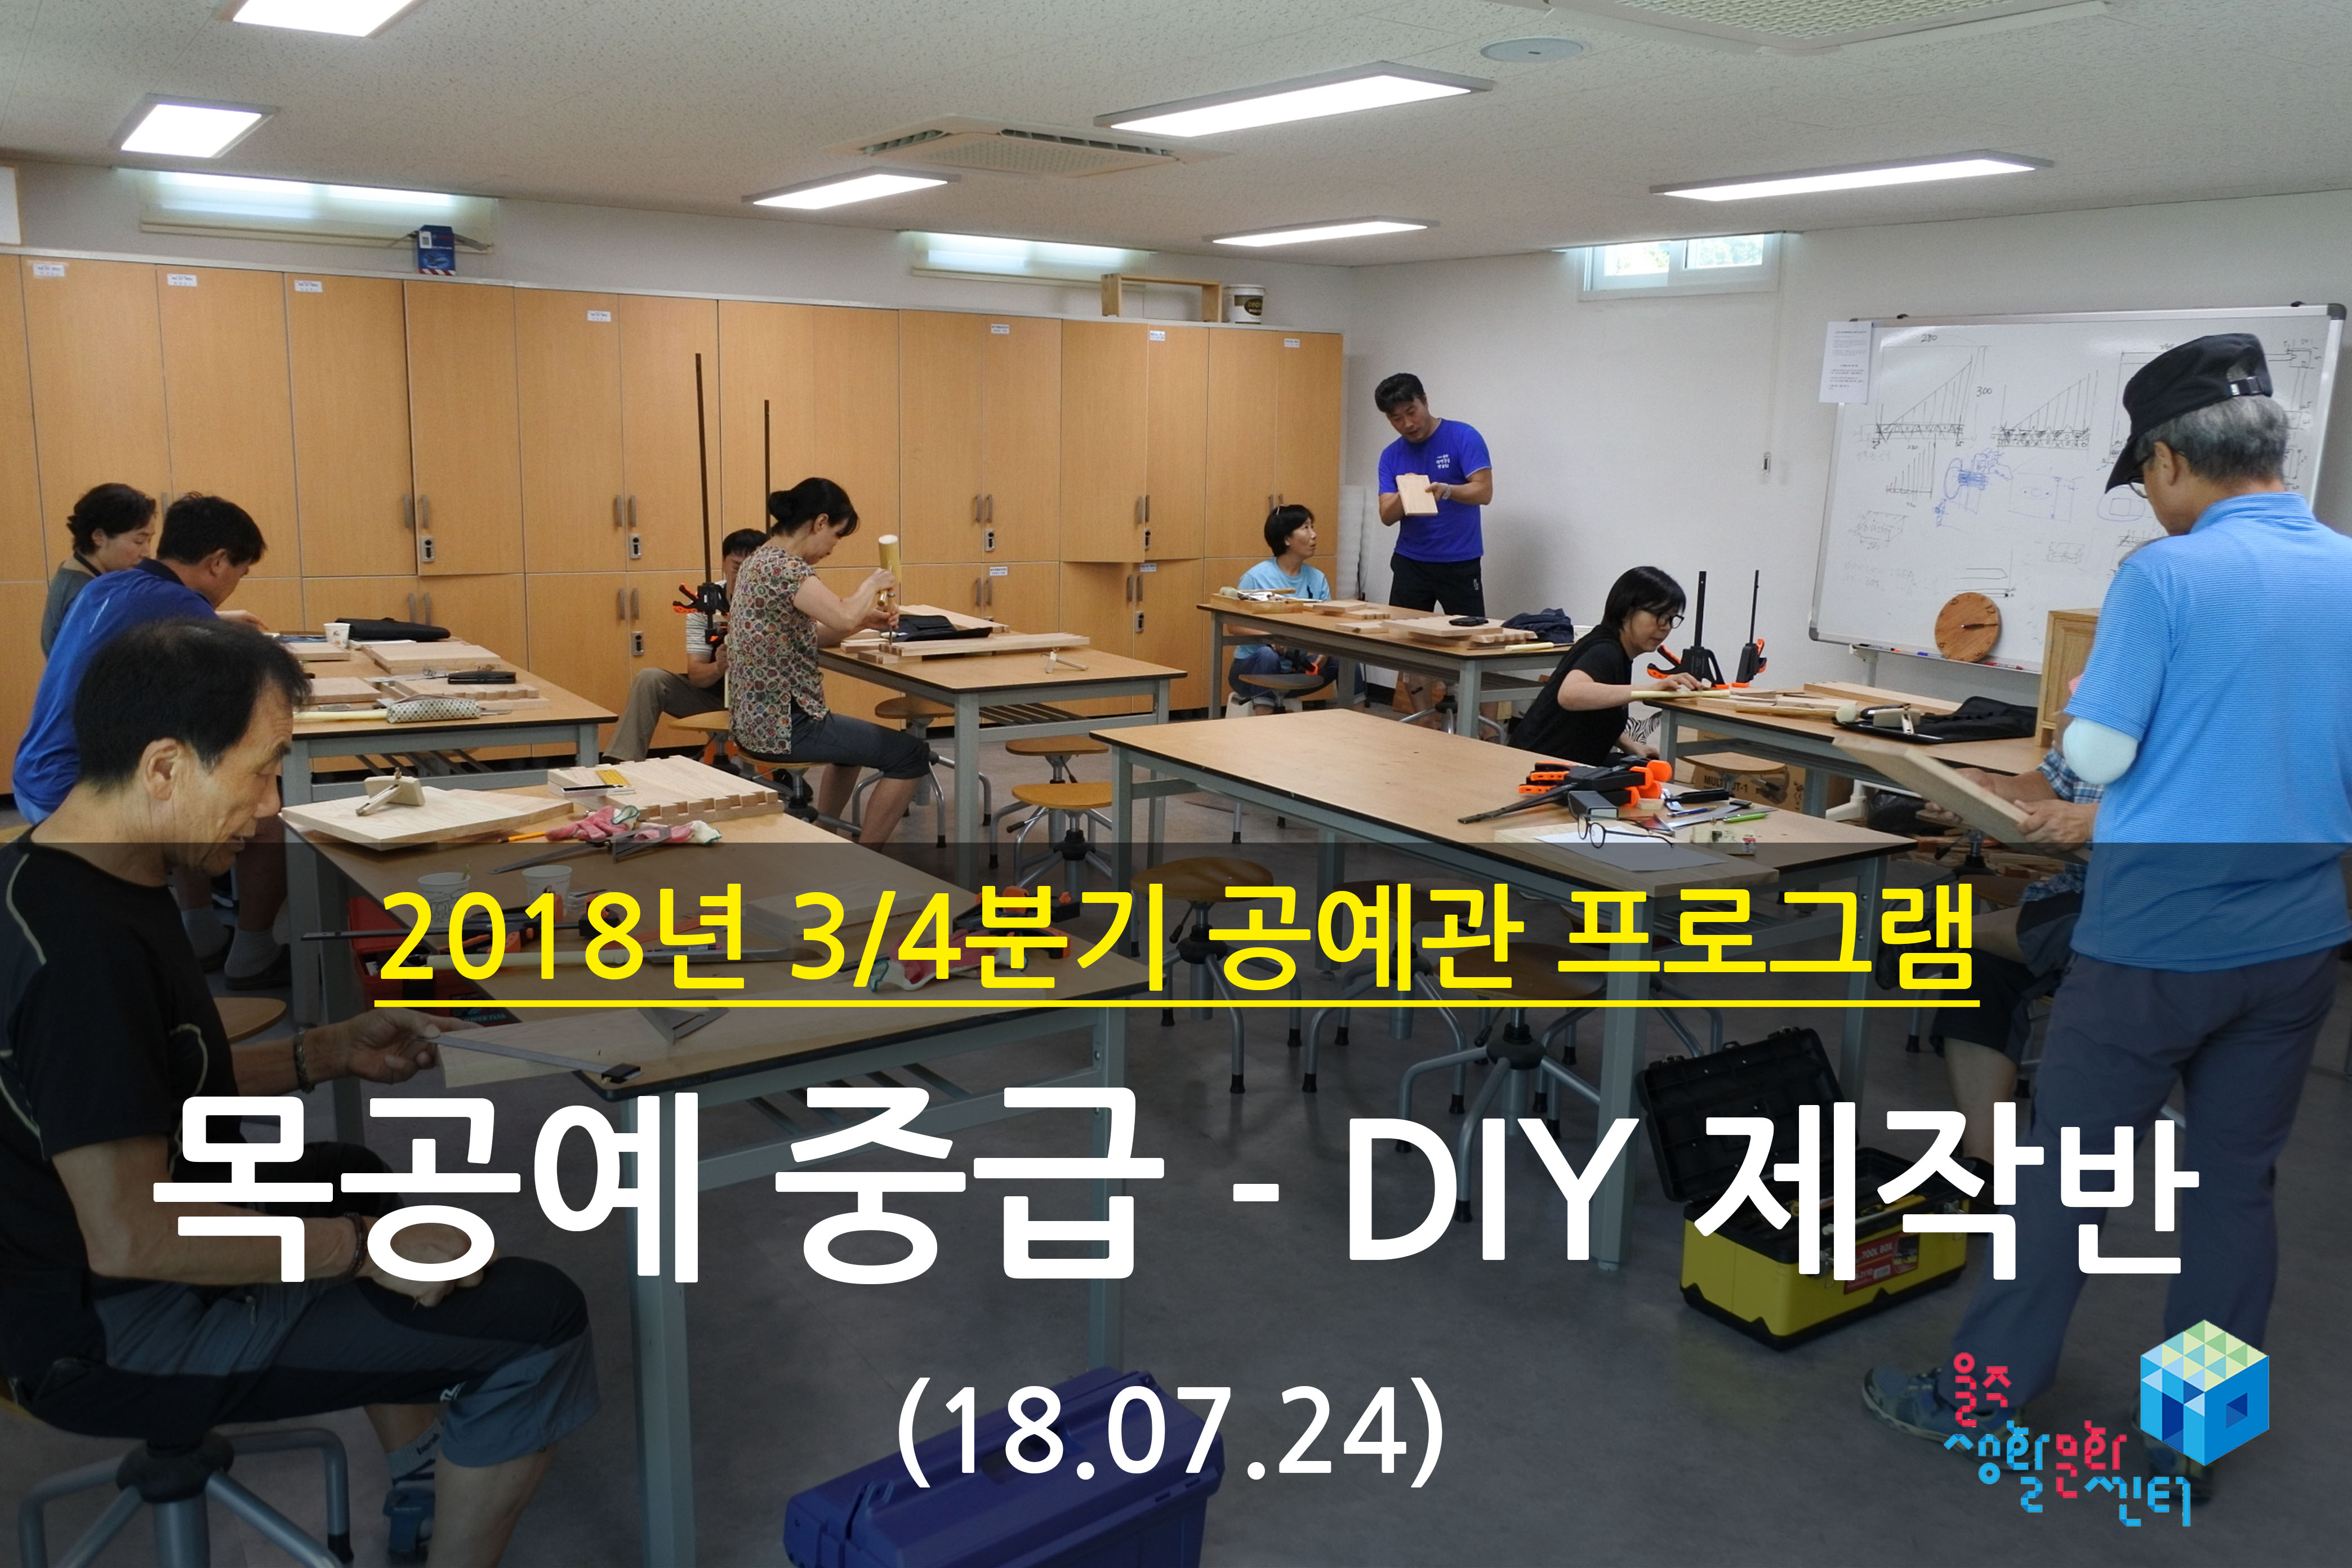 2018.07.24 _ 목공예 중급 - DIY 제작반 _ 3/4분기 4주차 수업